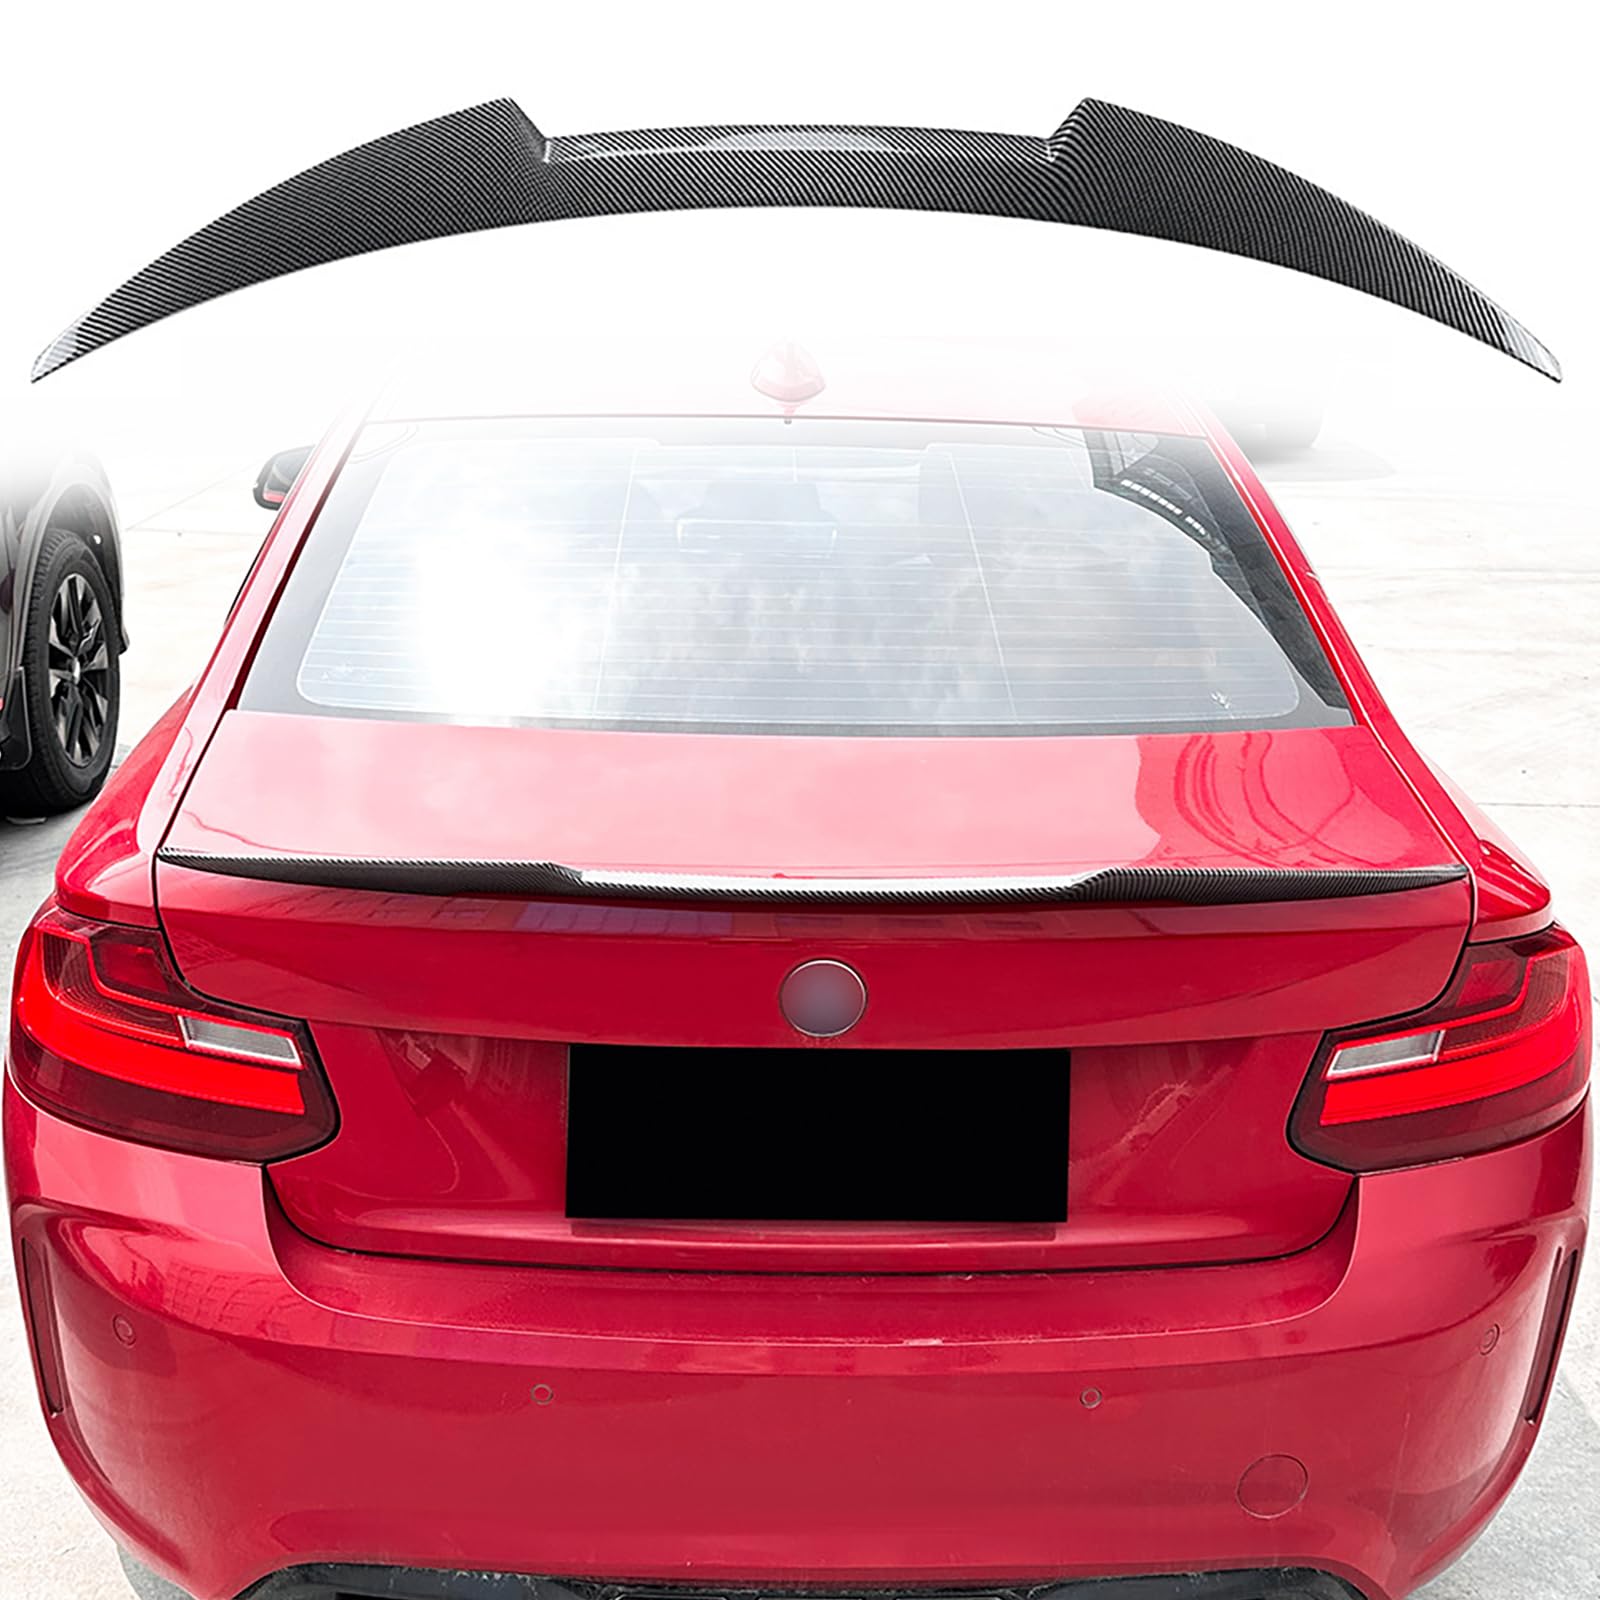 ABS Auto Heckspoiler für BMW 2 Series F22 M2 F87 2015-2019, Hinten Spoiler Spoilerlippe Performance Tuning Lippe Wing Styling Modification Zubehör,Carbon Fiber look von ZSWZDQ